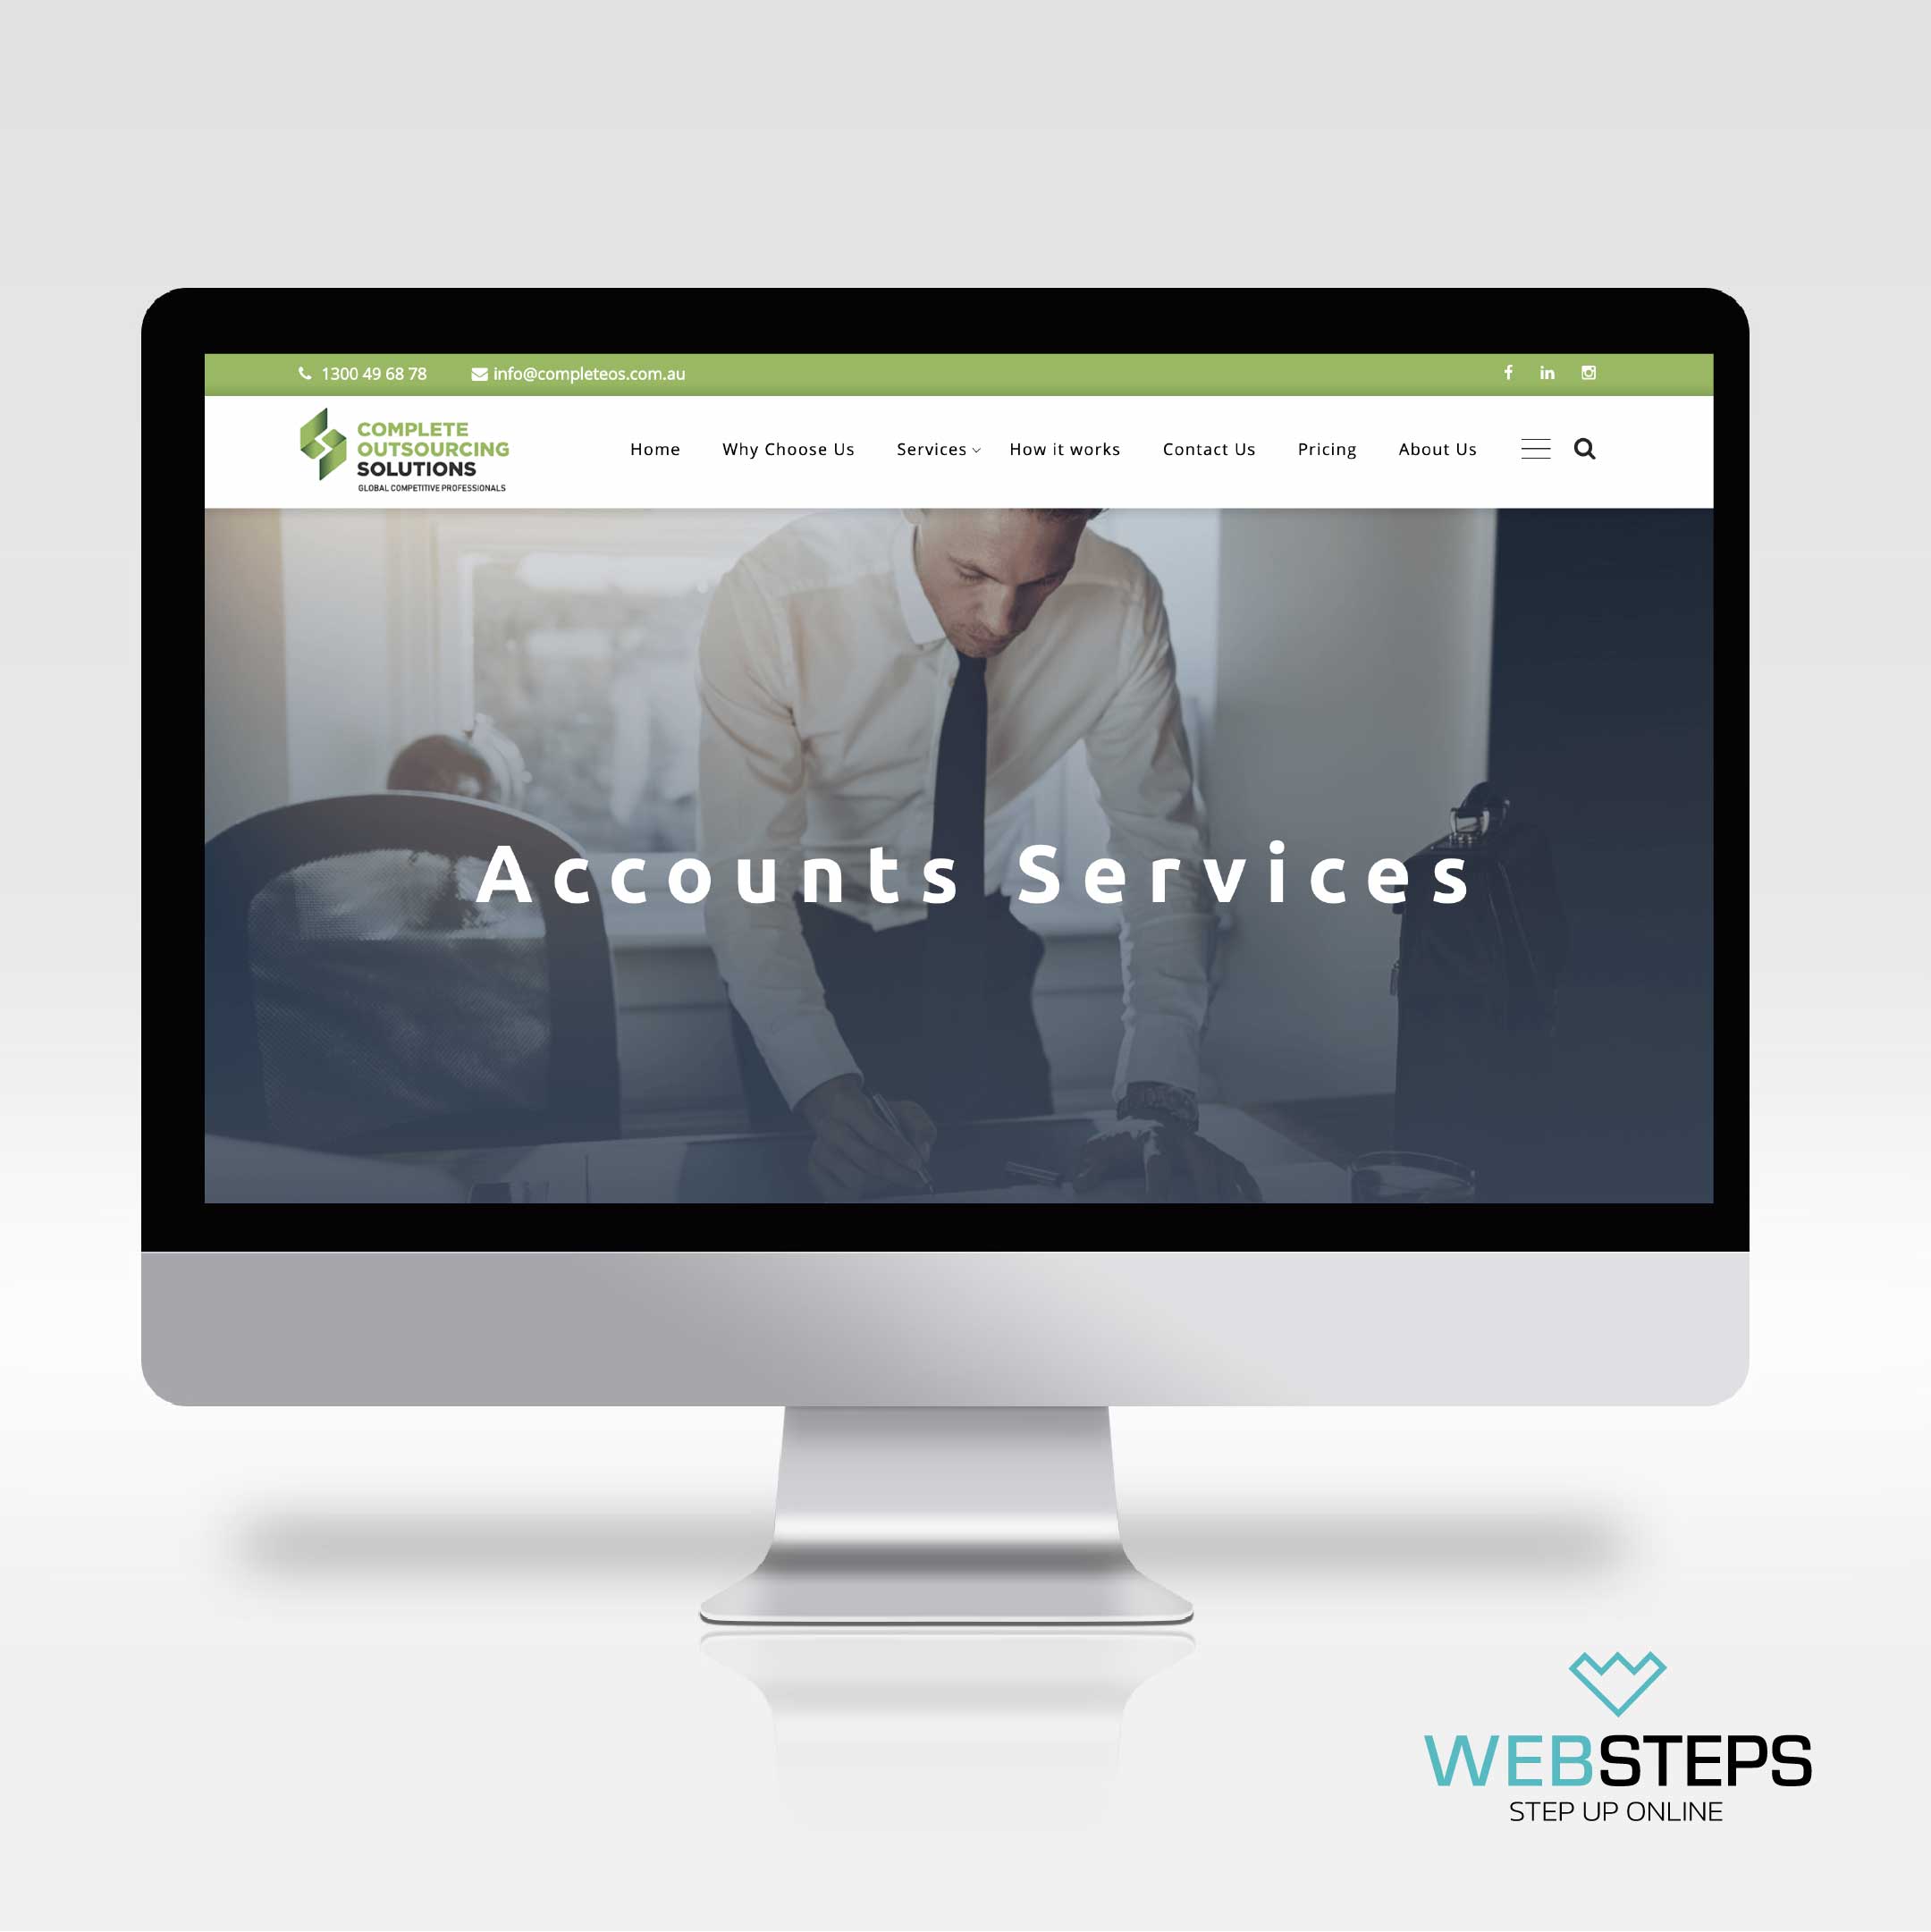 websteps-complete-outsourcing-solution-website